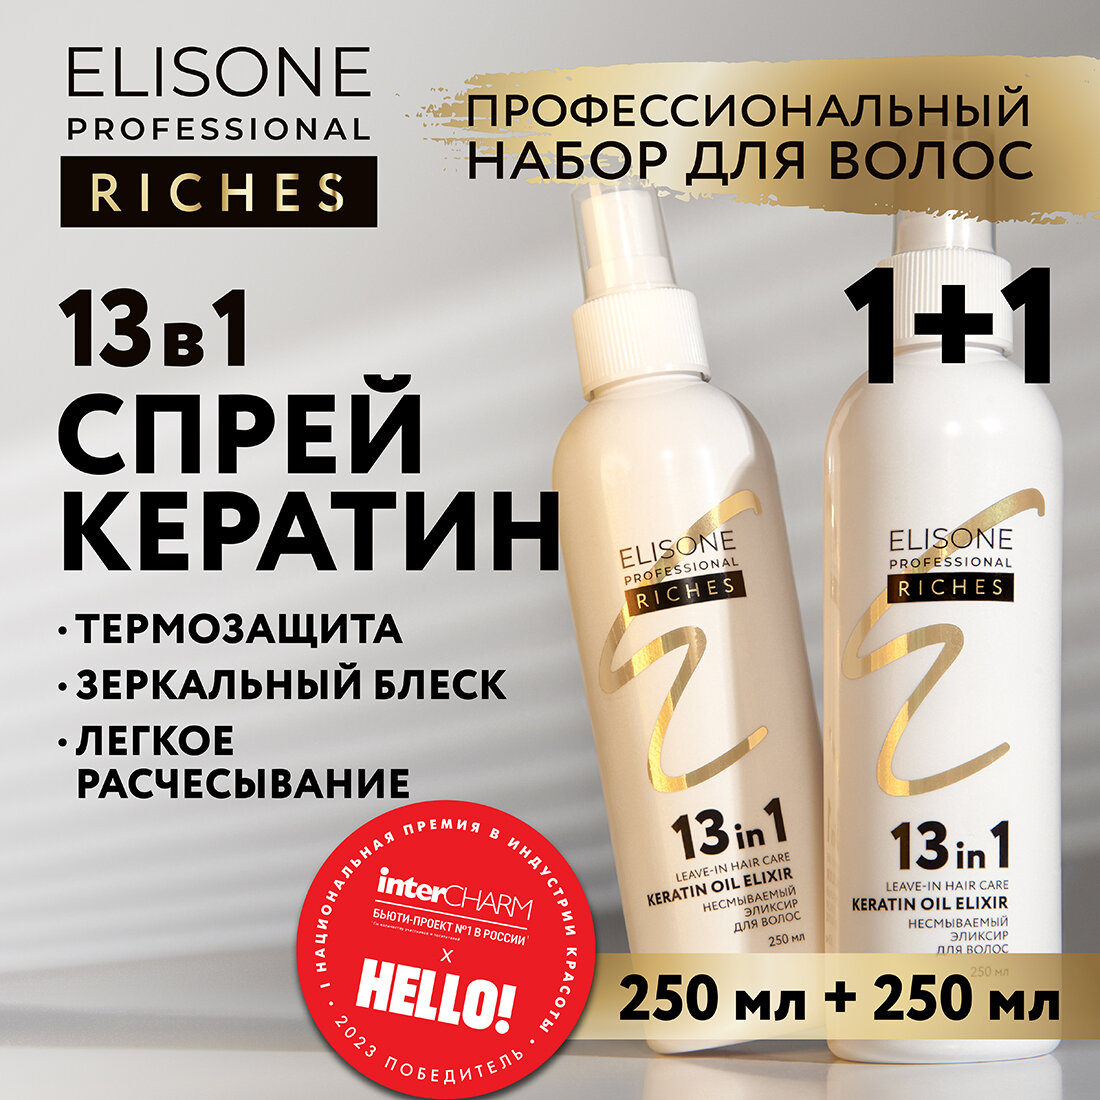 ELISONE PROFESSIONAL / Элисон / Несмываемый спрей для волос с кератином эликсир 13 действий в 1 RICHES OIL MIX 250 мл - 2 шт